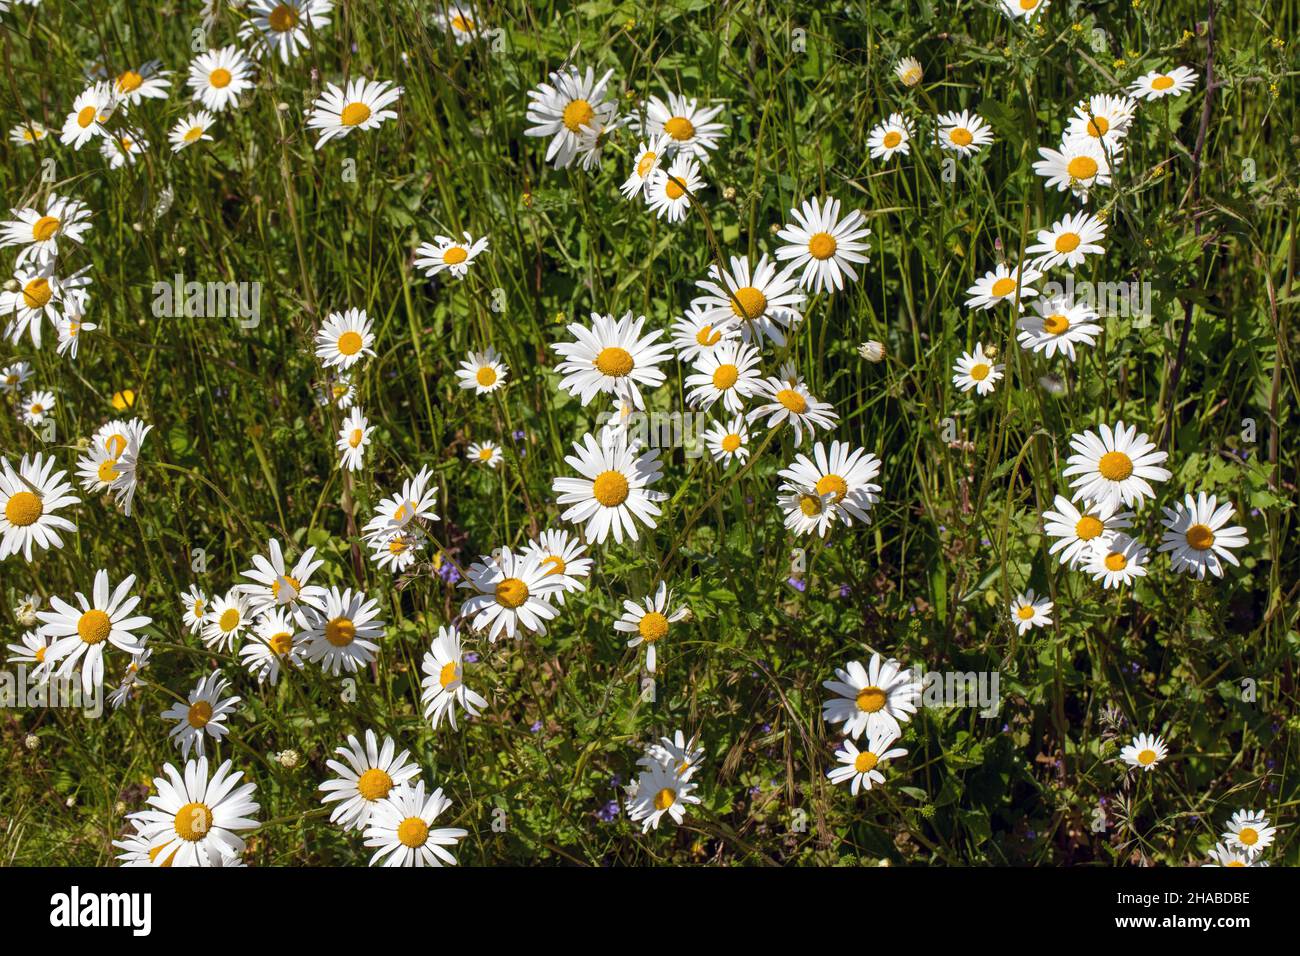 Oxeye Daisy (Leucanthemum vulgare). WildGrüne blühende Pflanzen, weiße, gelbe Blütenköpfe, die die Präsenz bestäubender Wirbelloser und Insekten annoncieren. Stockfoto